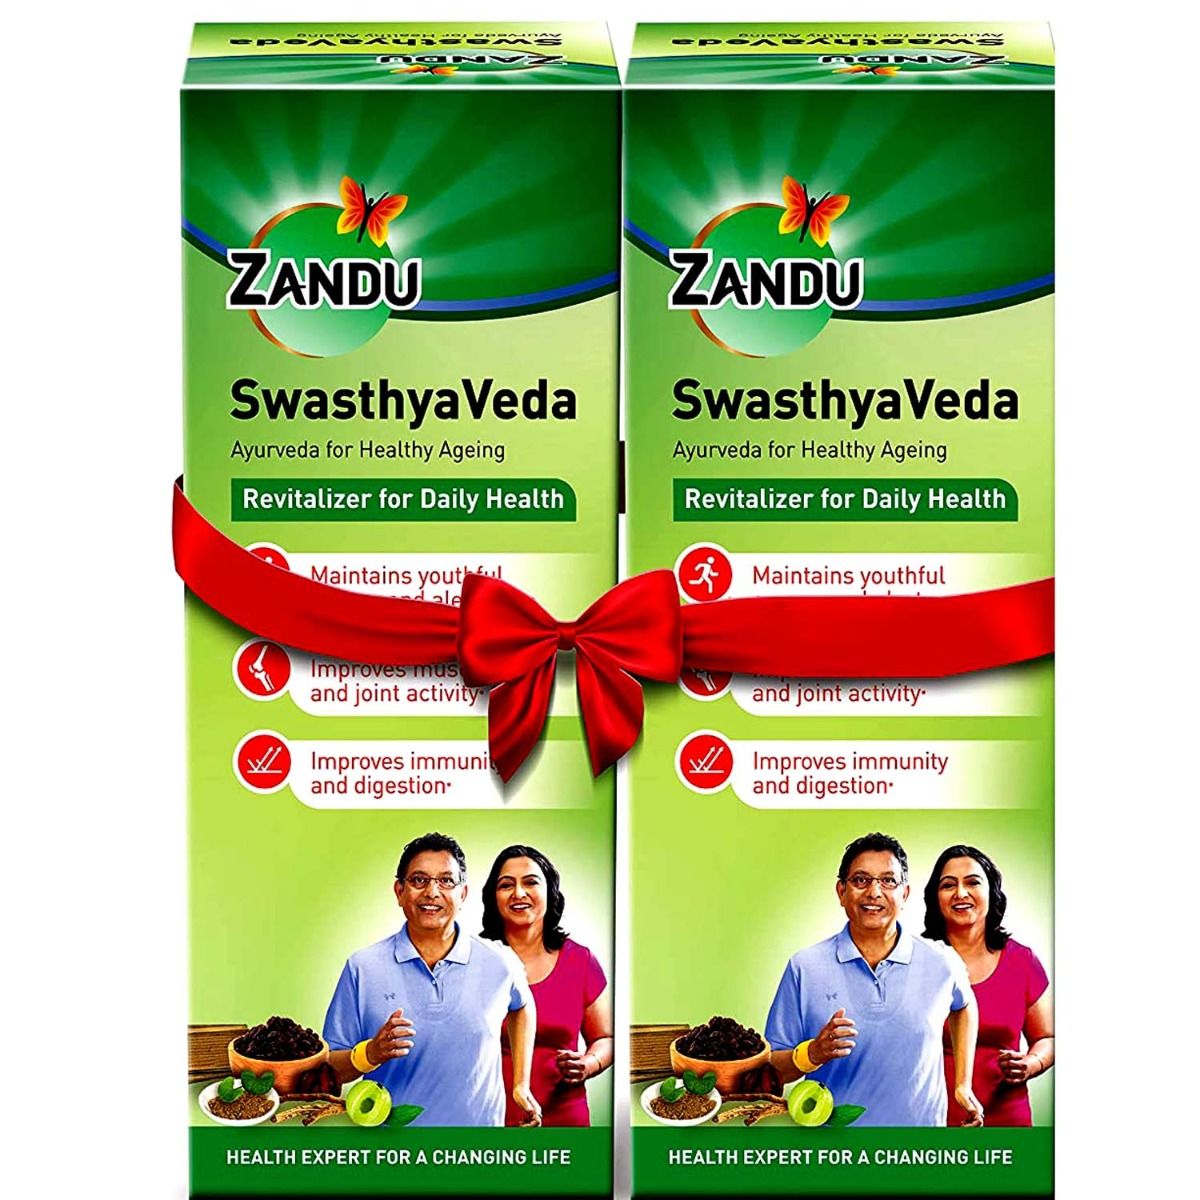 Buy Zandu Swasthyaveda, 450 ml Online